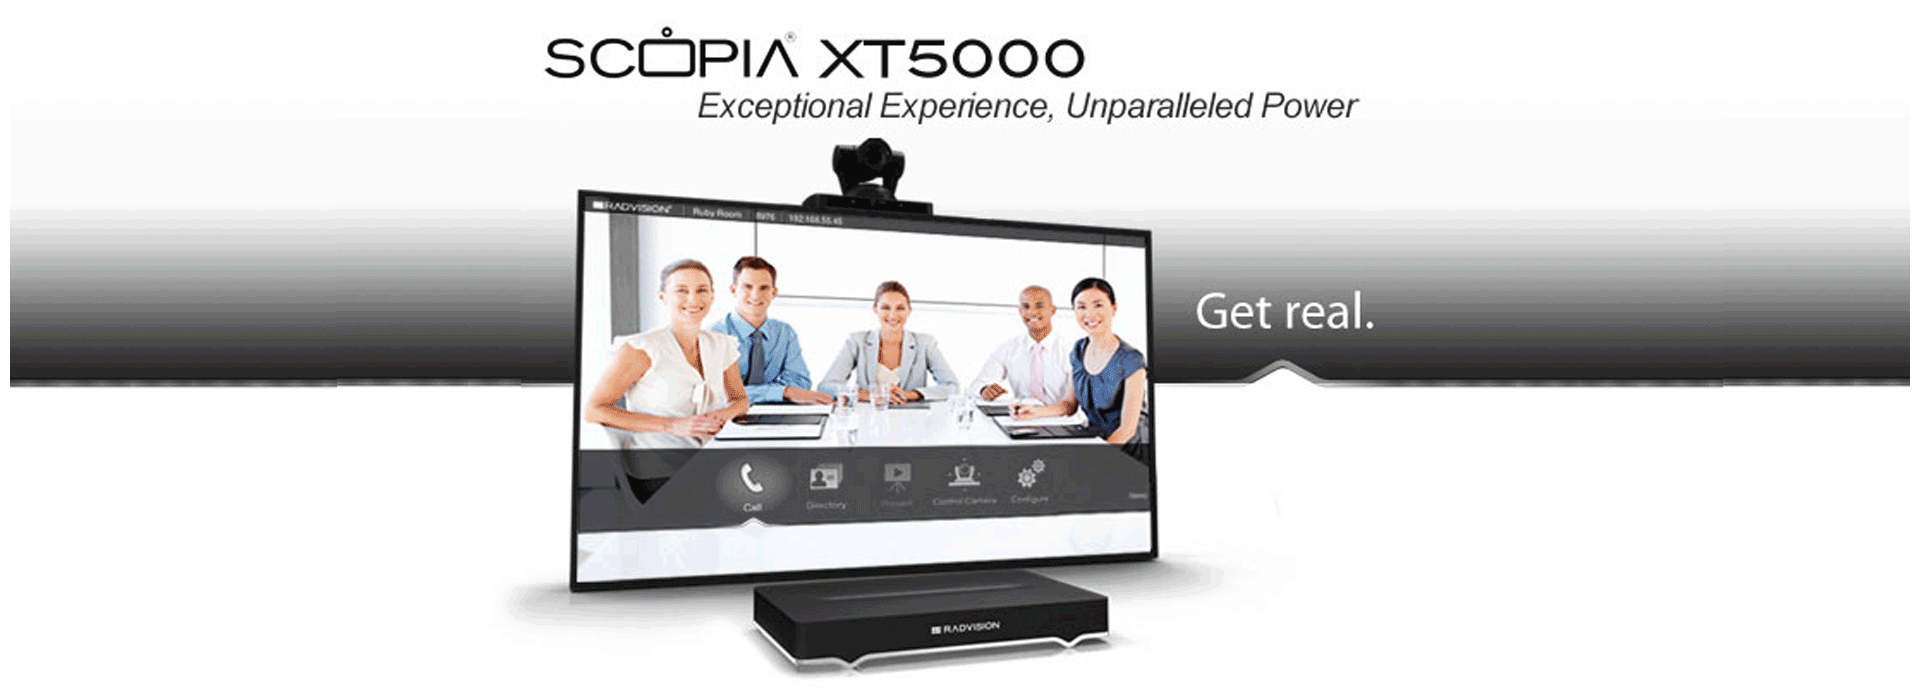 Scopia XT5000